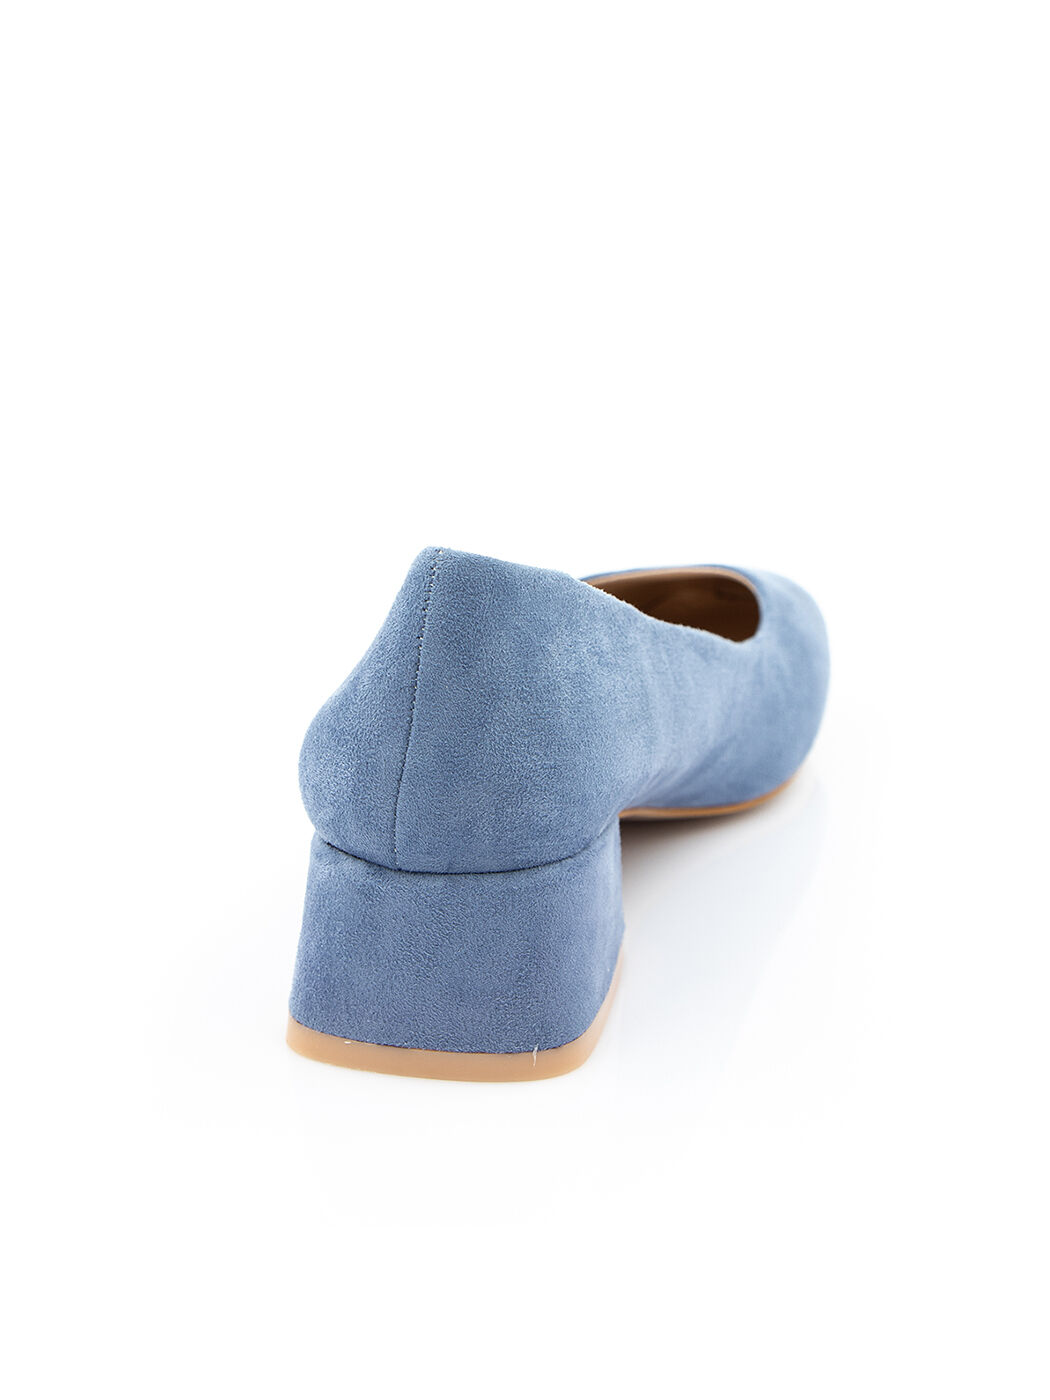 Туфли женские голубые экозамша каблук устойчивый демисезон от производителя 3M вид 1